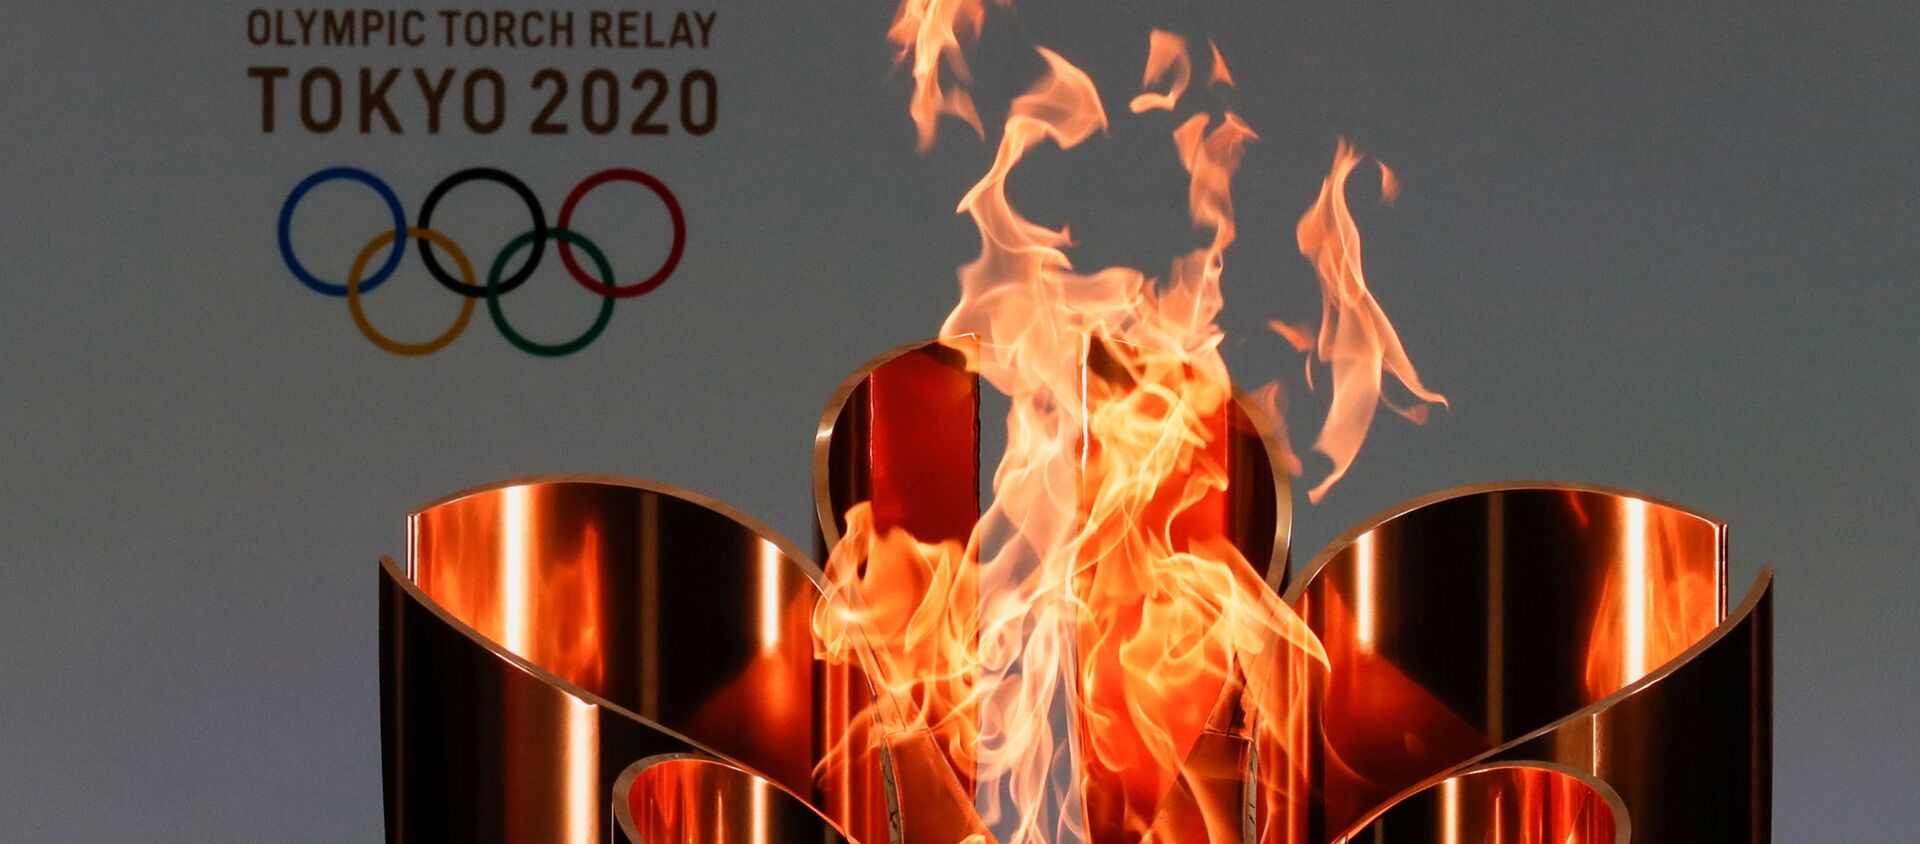 Ngọn lửa olympic của Thế vận hội Olympic ở Tokyo-2020. - Sputnik Việt Nam, 1920, 05.07.2021